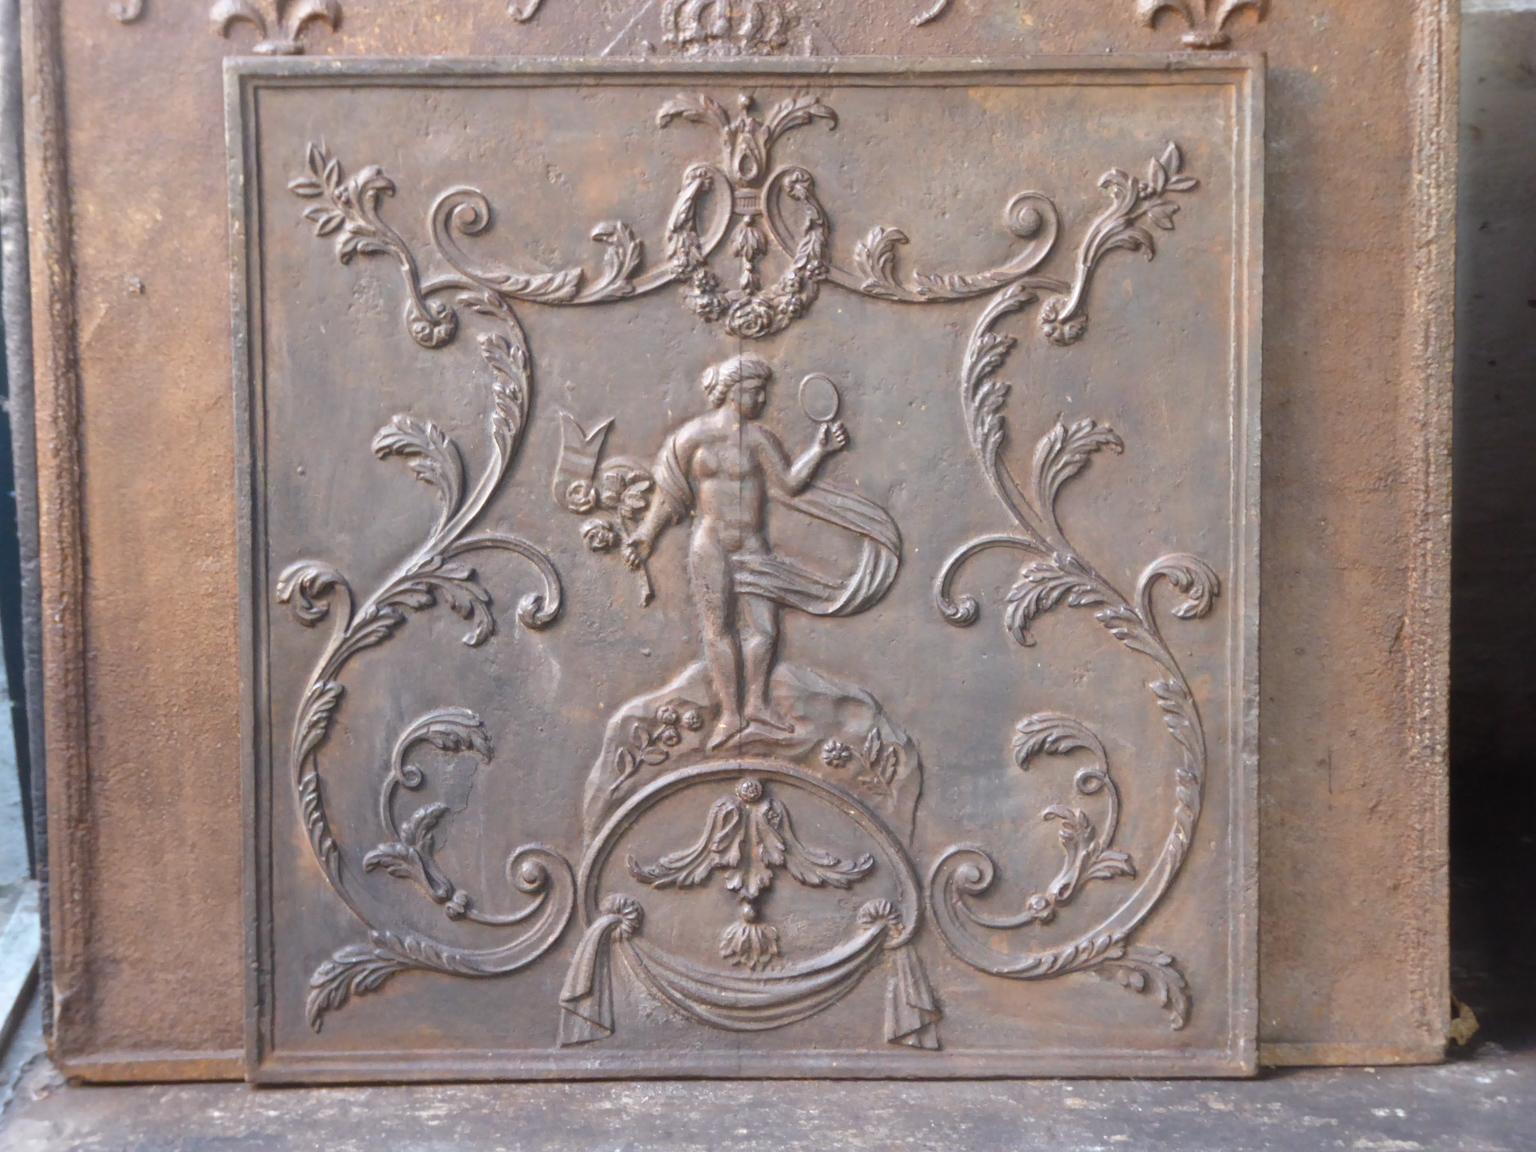 Ende des 18. oder Anfang des 19. Jahrhunderts französischer Feuerstuhl mit Venus. Venus mit ihrem Spiegel und der Fackel der Hestia. Göttin der Liebe, Schönheit und Fruchtbarkeit. Die Fackel ist das Symbol der Hestia, der Göttin des Feuers und